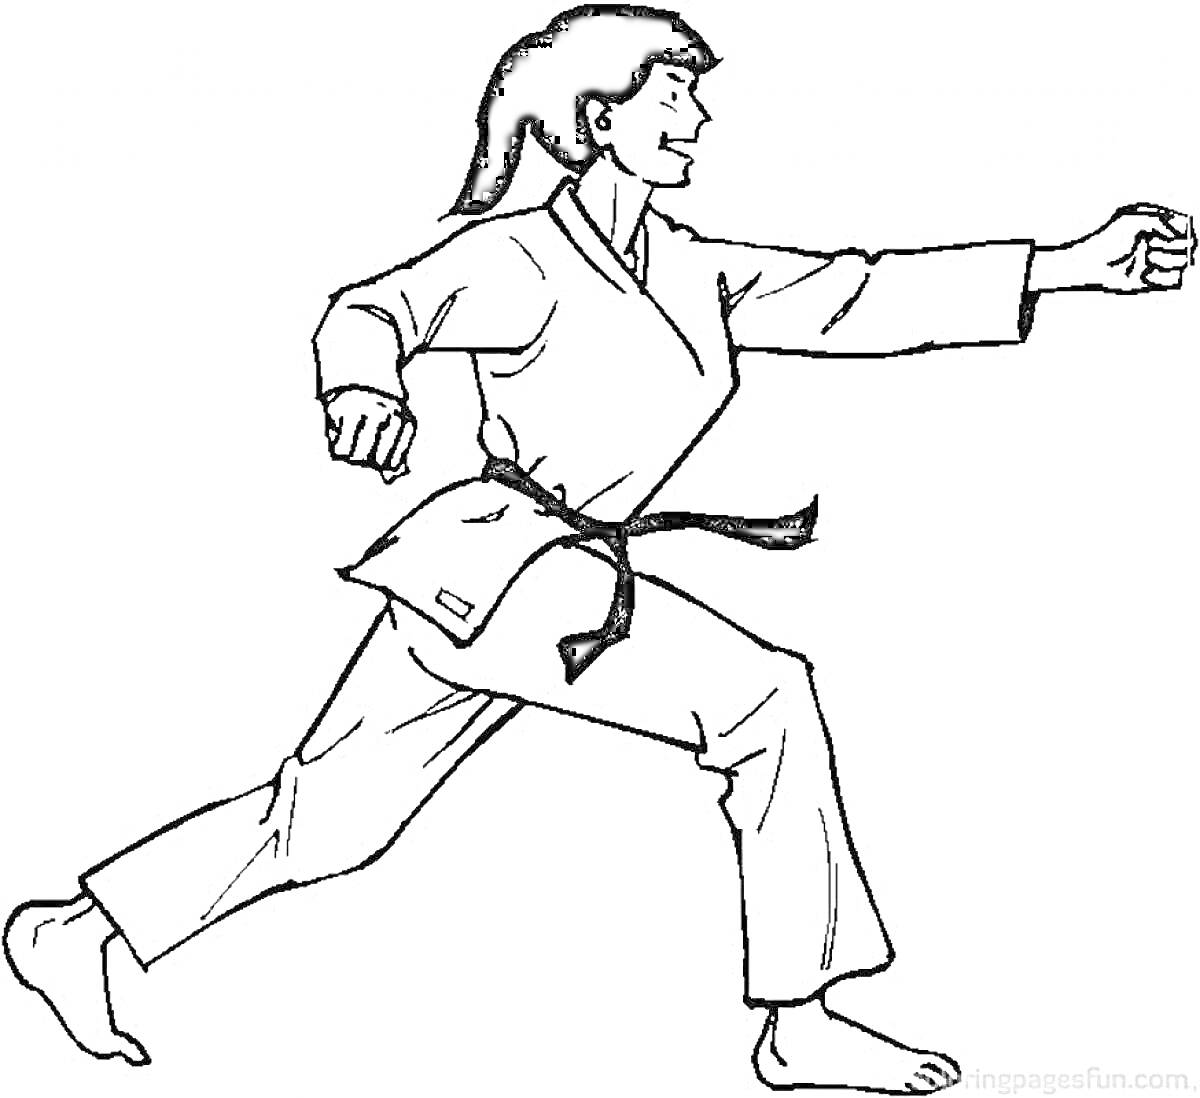 Человек в кимоно выполняет удар рукой в карате